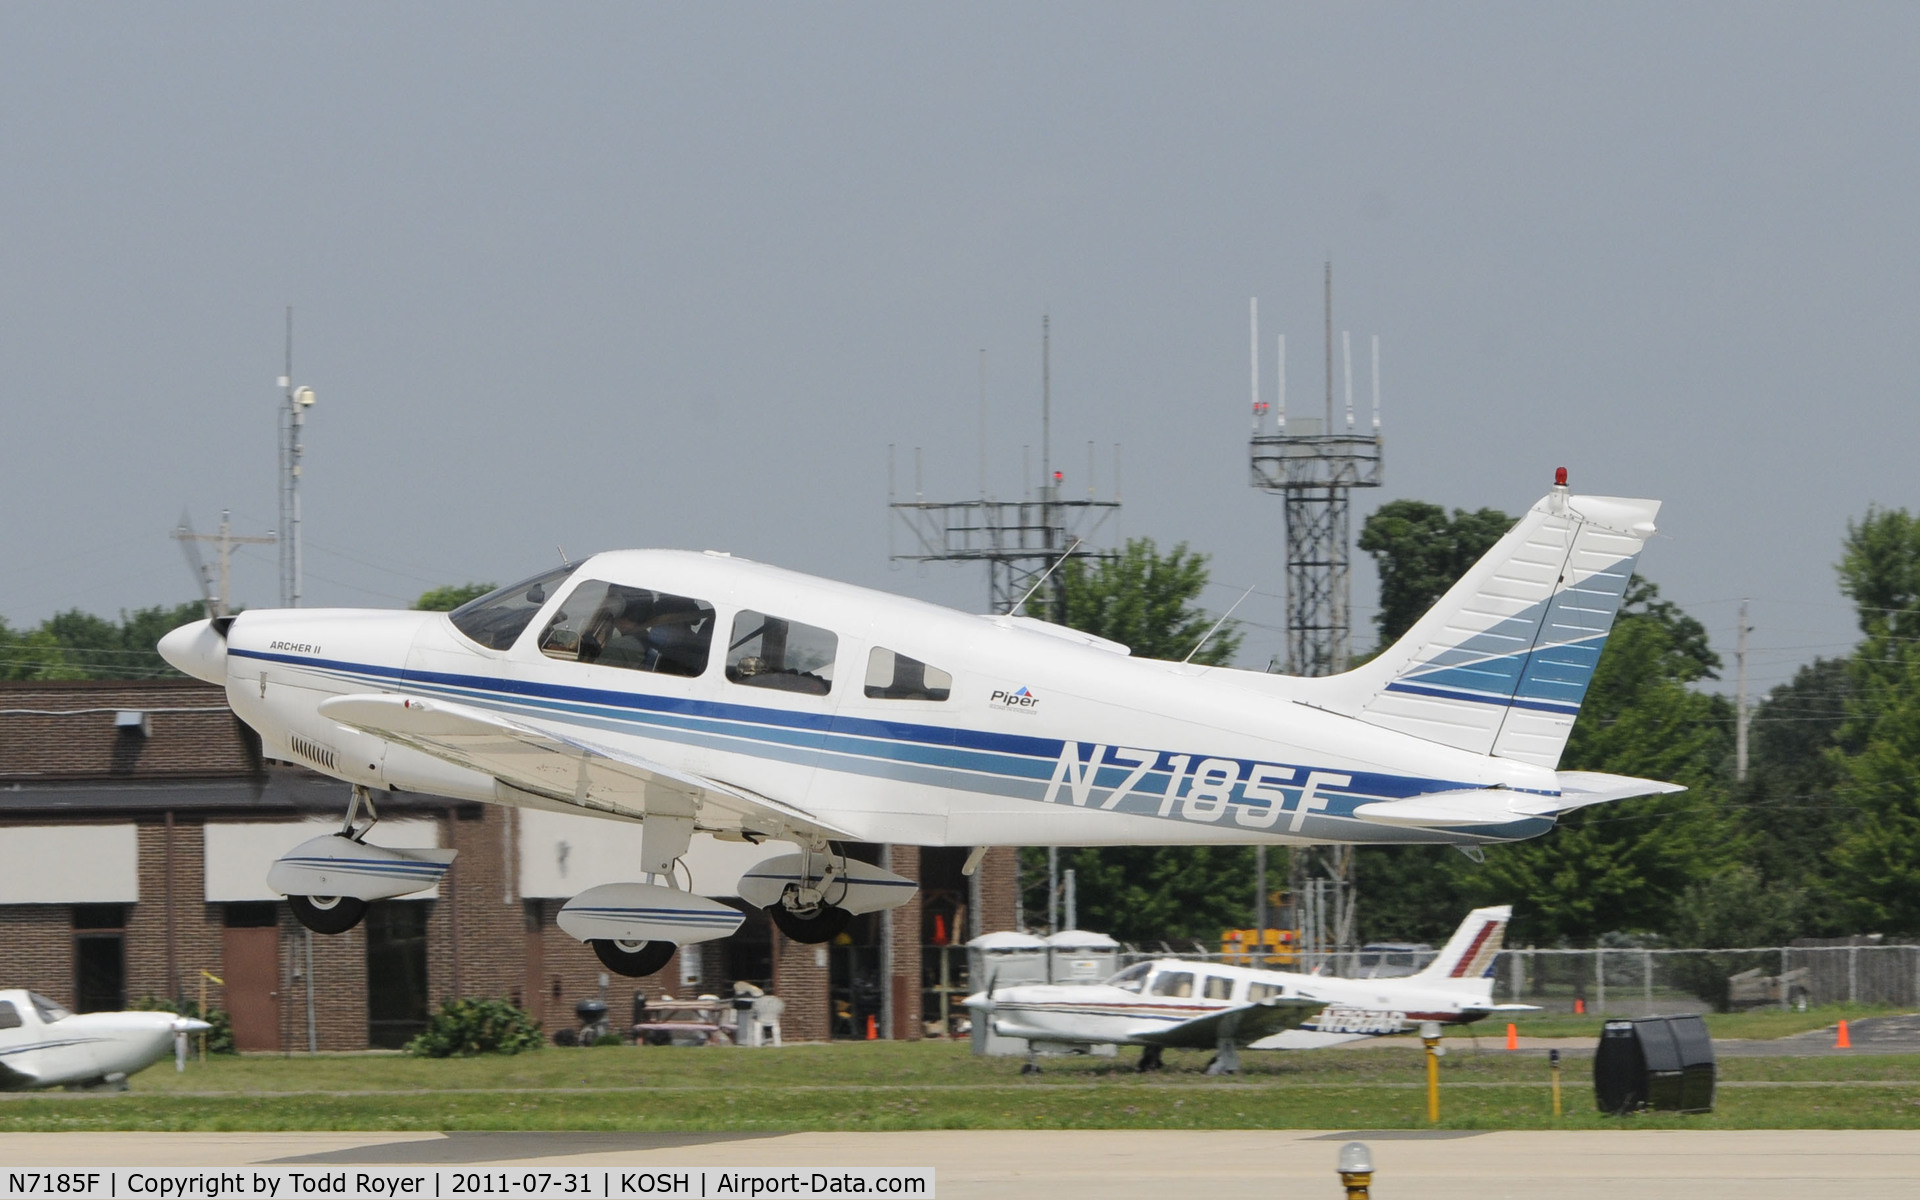 N7185F, 1976 Piper PA-28-181 Archer C/N 28-7790186, AIRVENTURE 2011